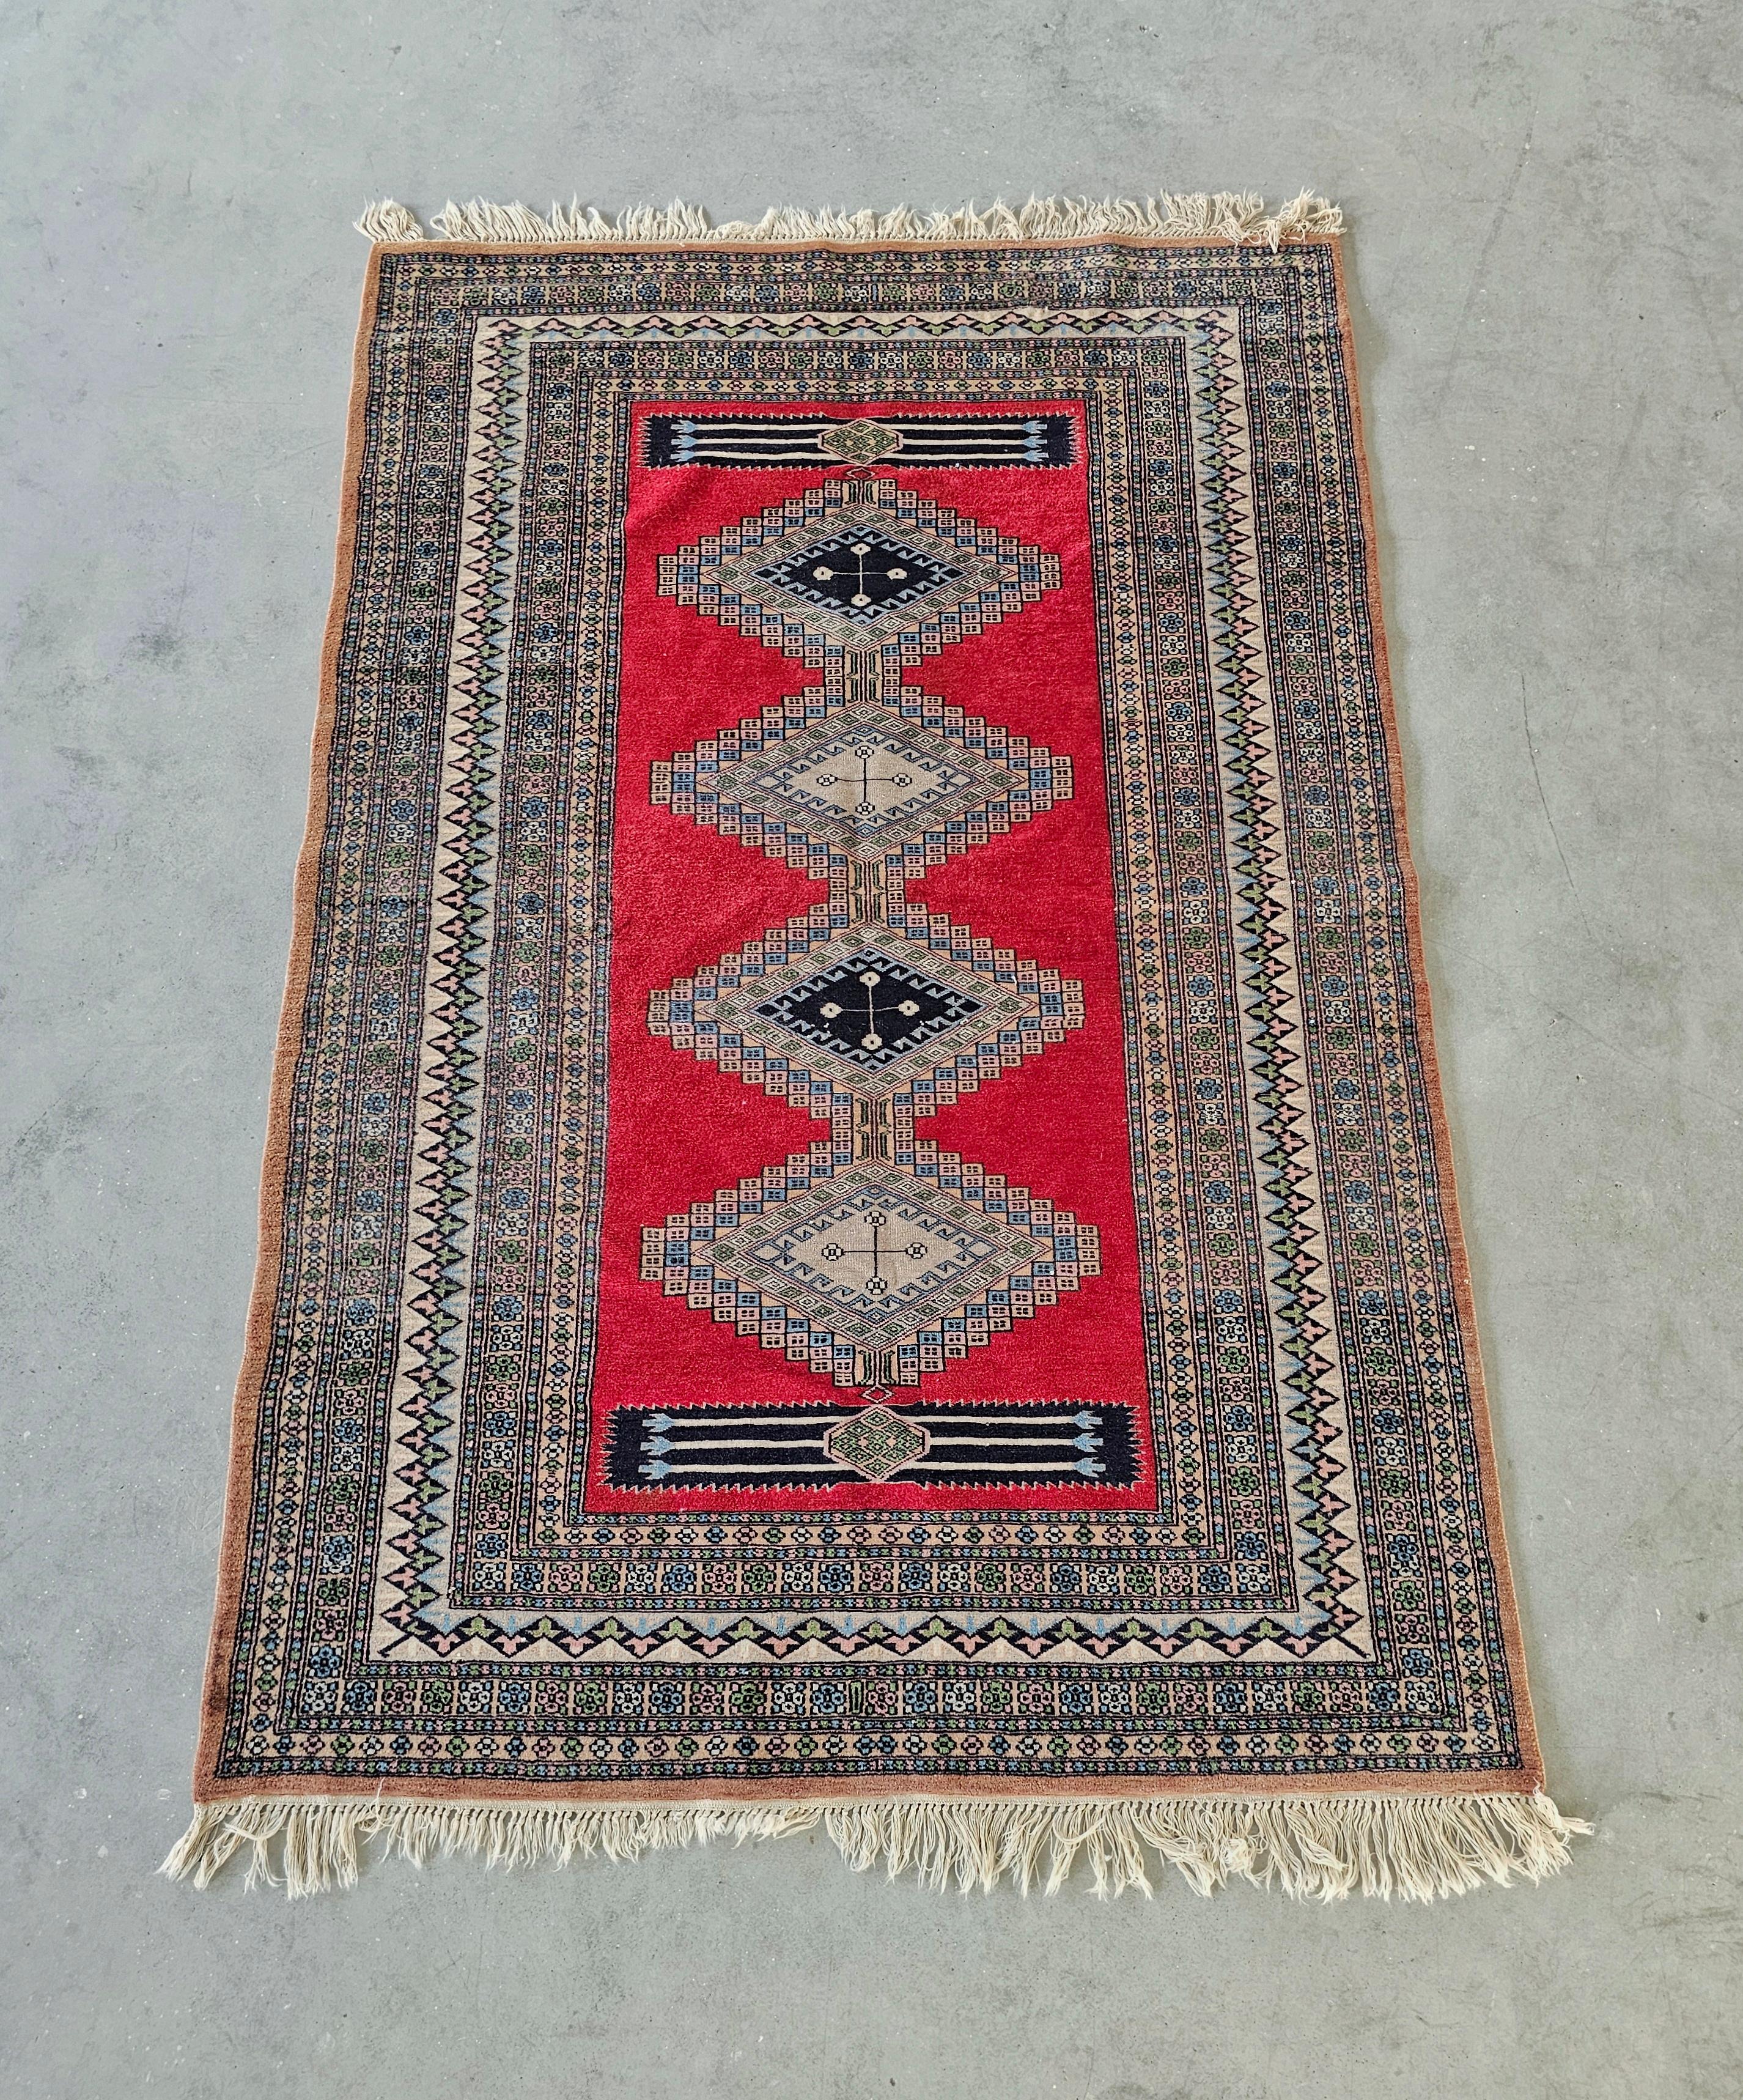 Vous trouverez dans cette annonce un magnifique tapis persan de taille moyenne noué à la main en 100% laine fine. Ce tapis appartient à la famille des tapis Ghom, qui se caractérisent par des nœuds de haute densité. Fabriqué au Pakistan dans les